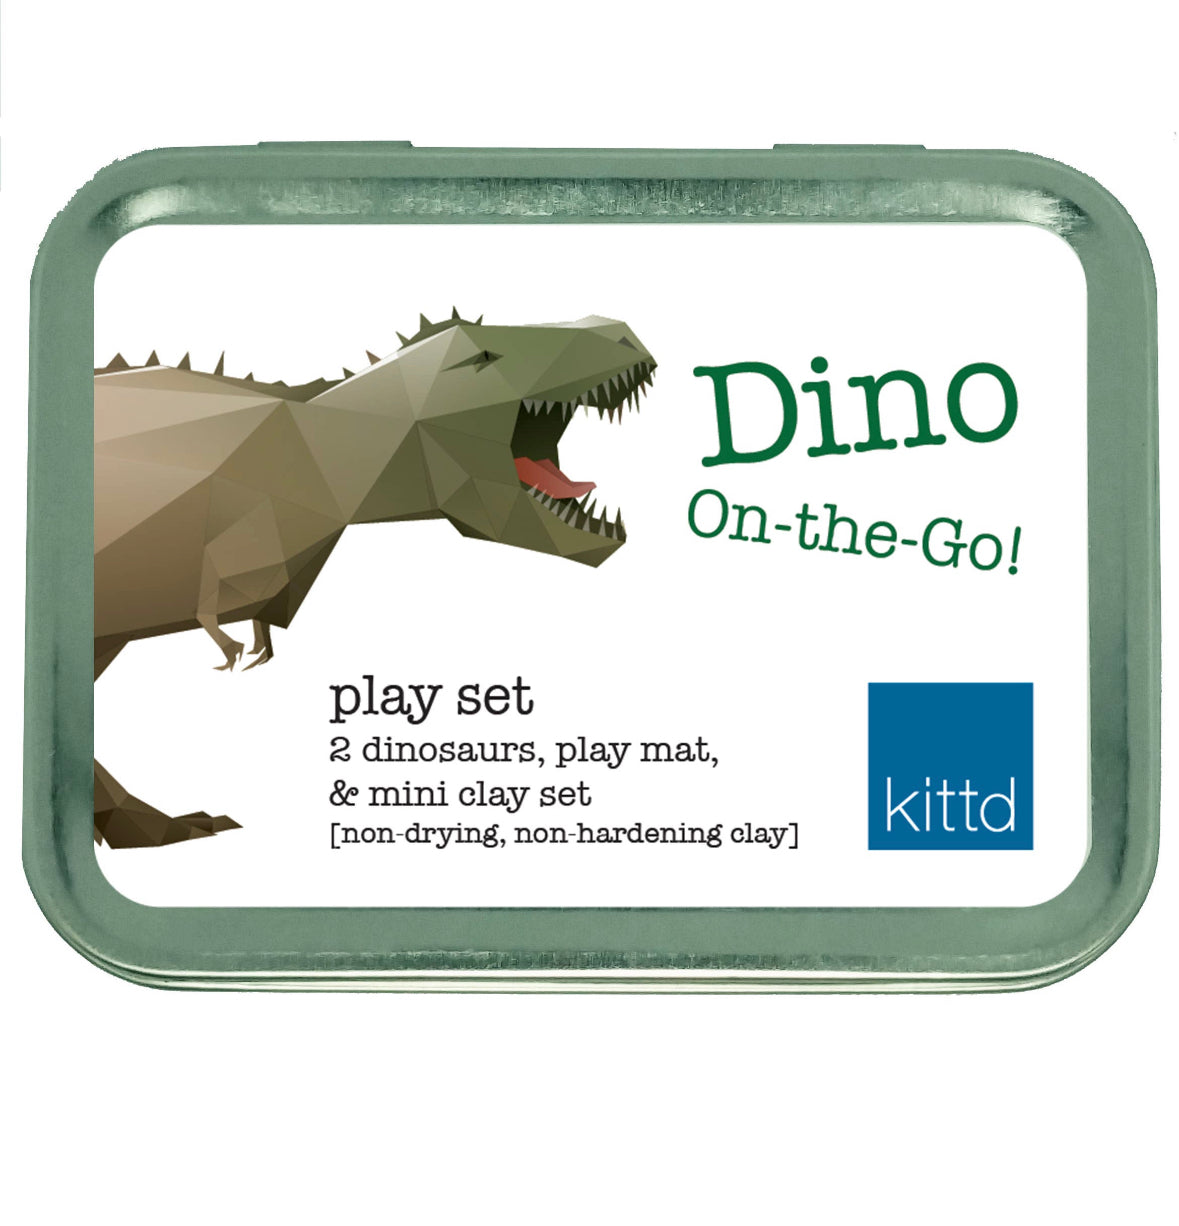 Dino On-the-Go Play Set